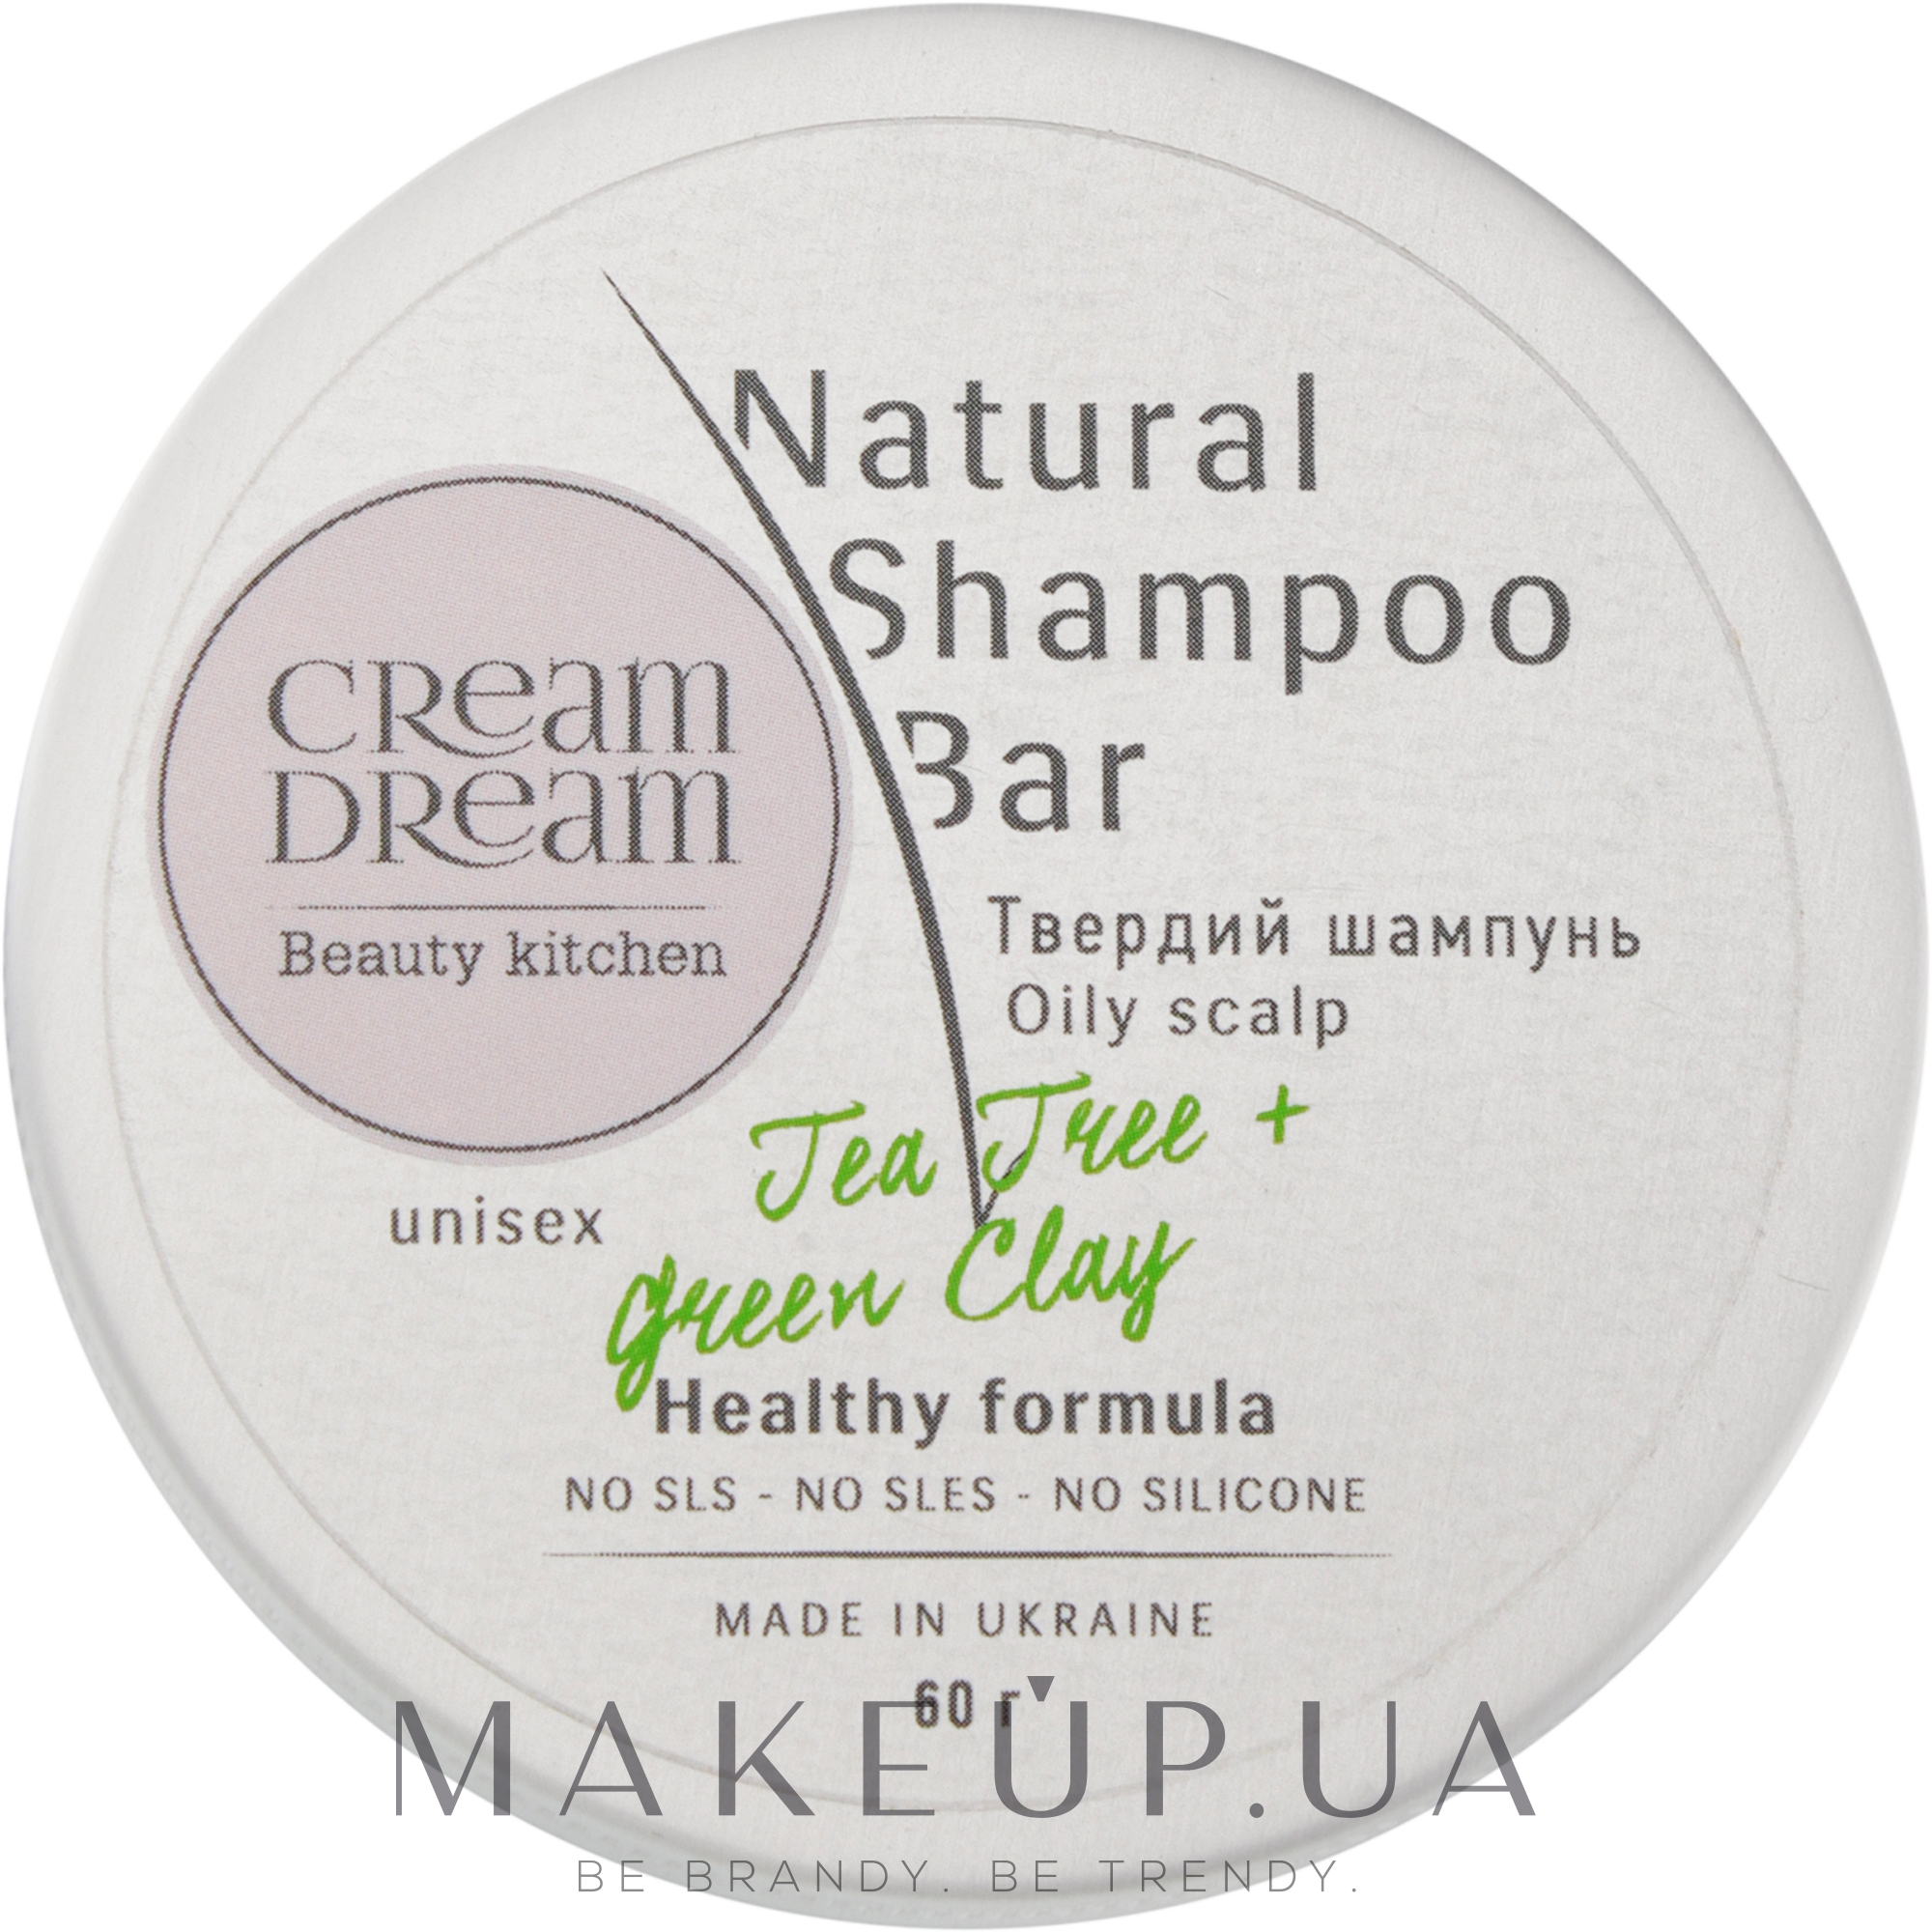 Твердый шампунь для жирной кожи головы с зеленой глиной - Cream Dream beauty kitchen Cream Dream Natural Shampoo Bar  — фото 60g